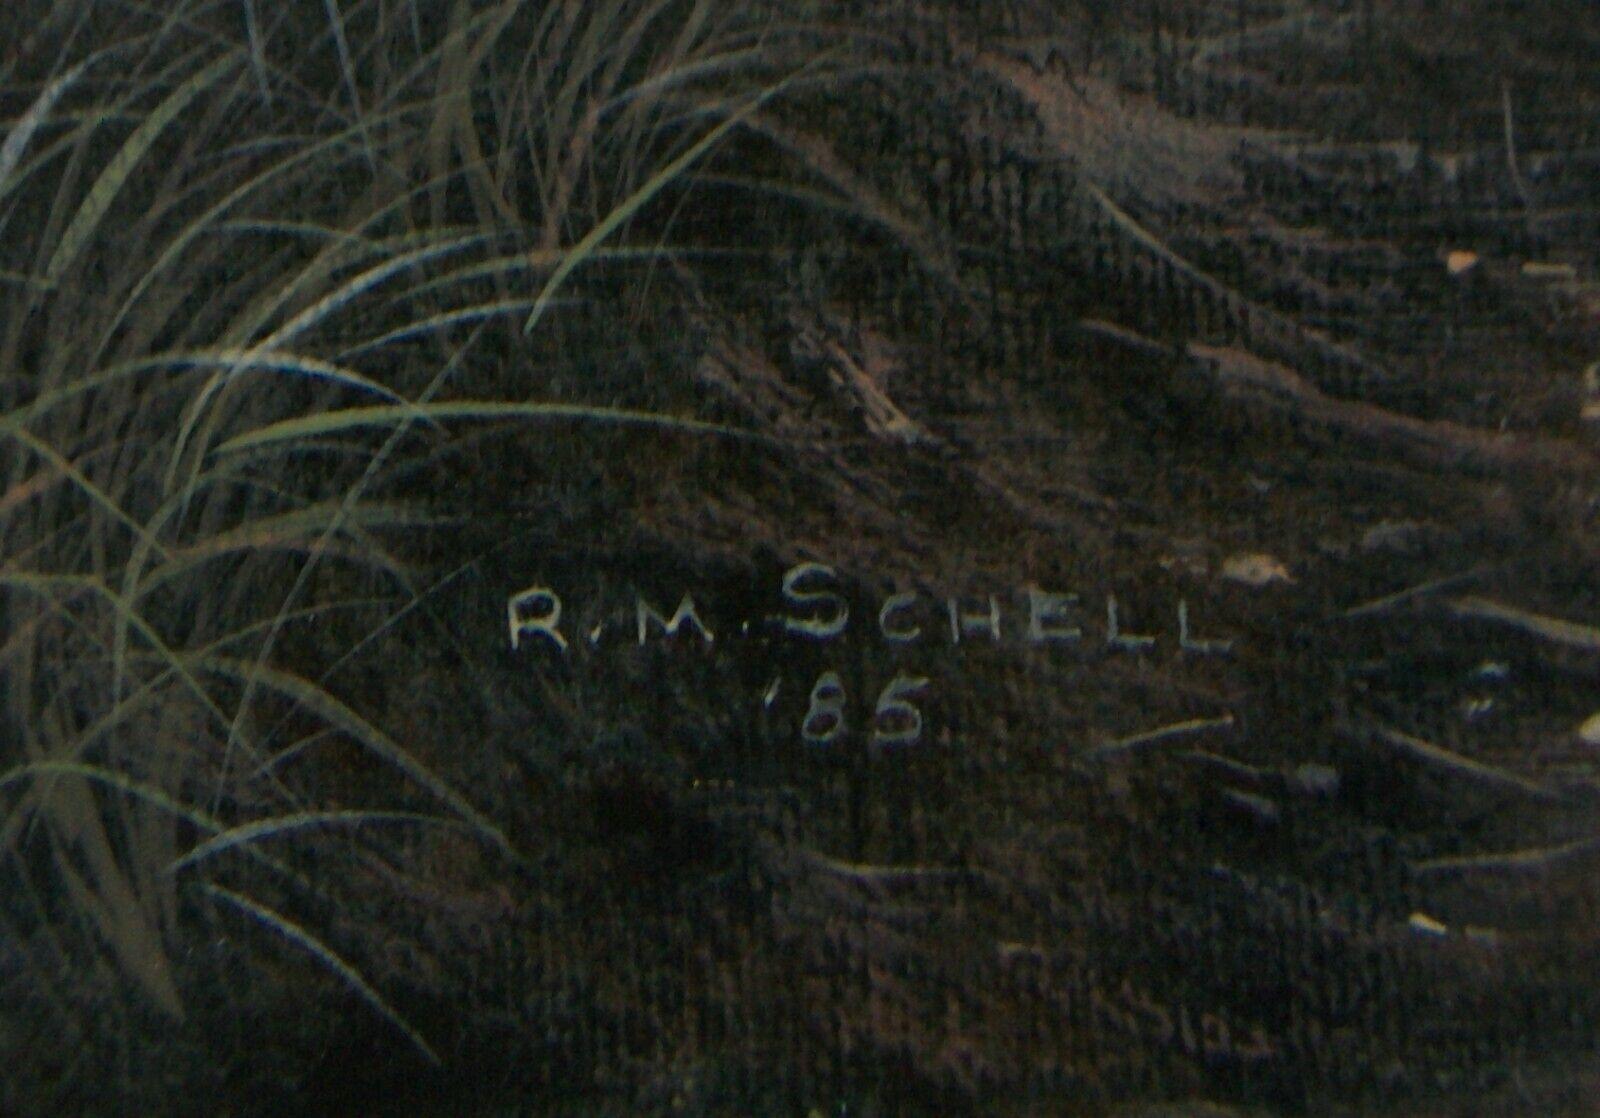 R. M. Schell, 